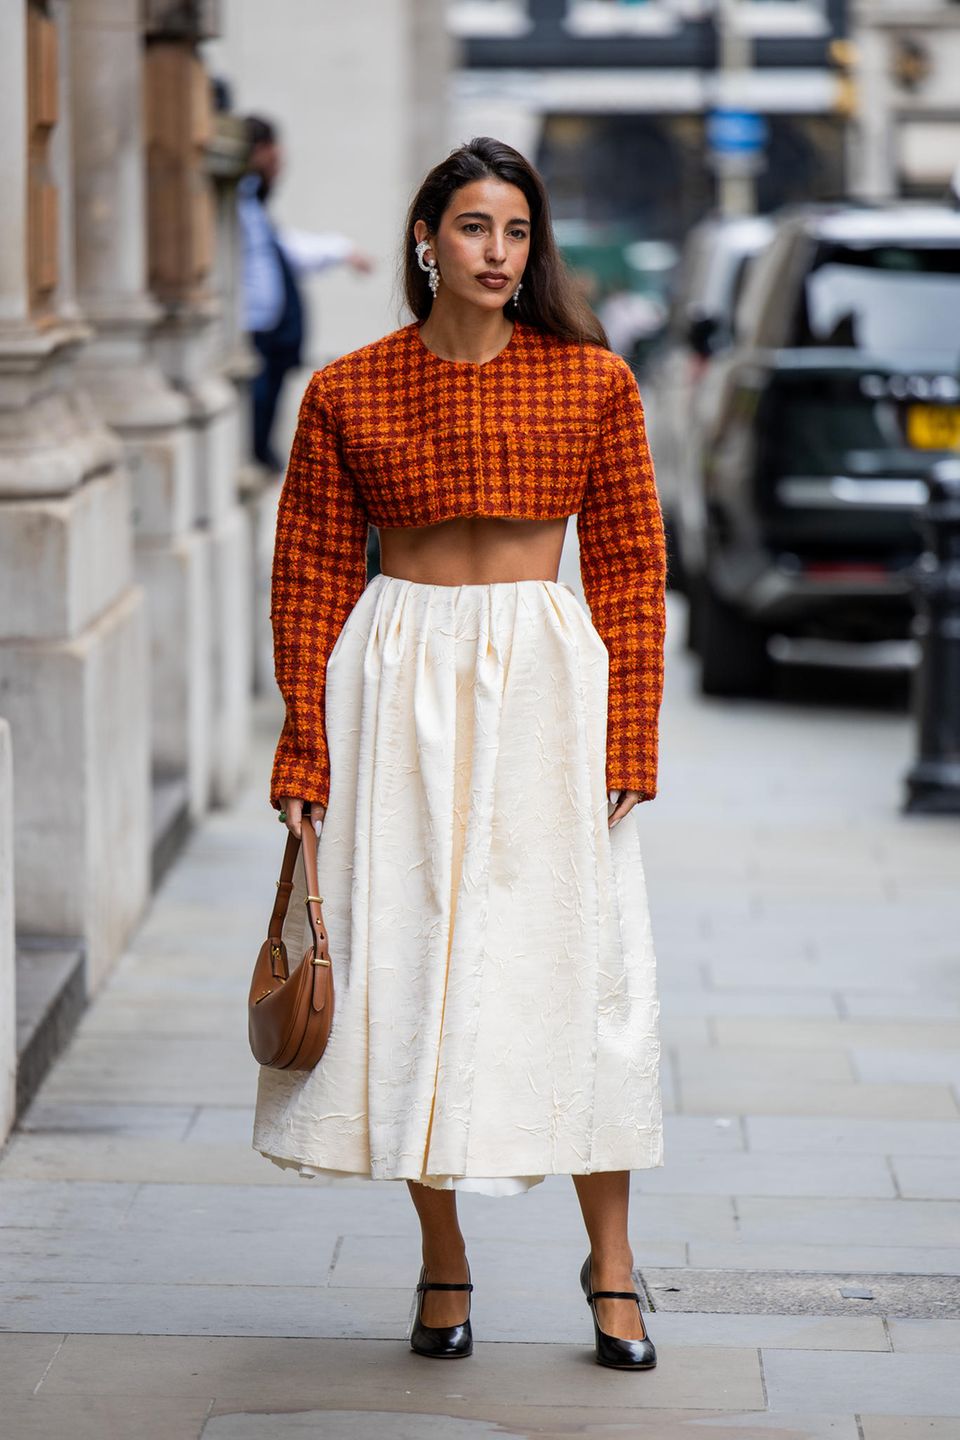 Auch auf den Straßen von London lassen die Styles nicht zu wünschen übrig. Besonders passend für den Herbst, spielt kräftiges Orange eine große Rolle. Bettina Looney zeigt sich vor der Show von Emilia Wickstead in einem orangefarbenen Crop-Hemd und einem langen cremefarbenen Rock.